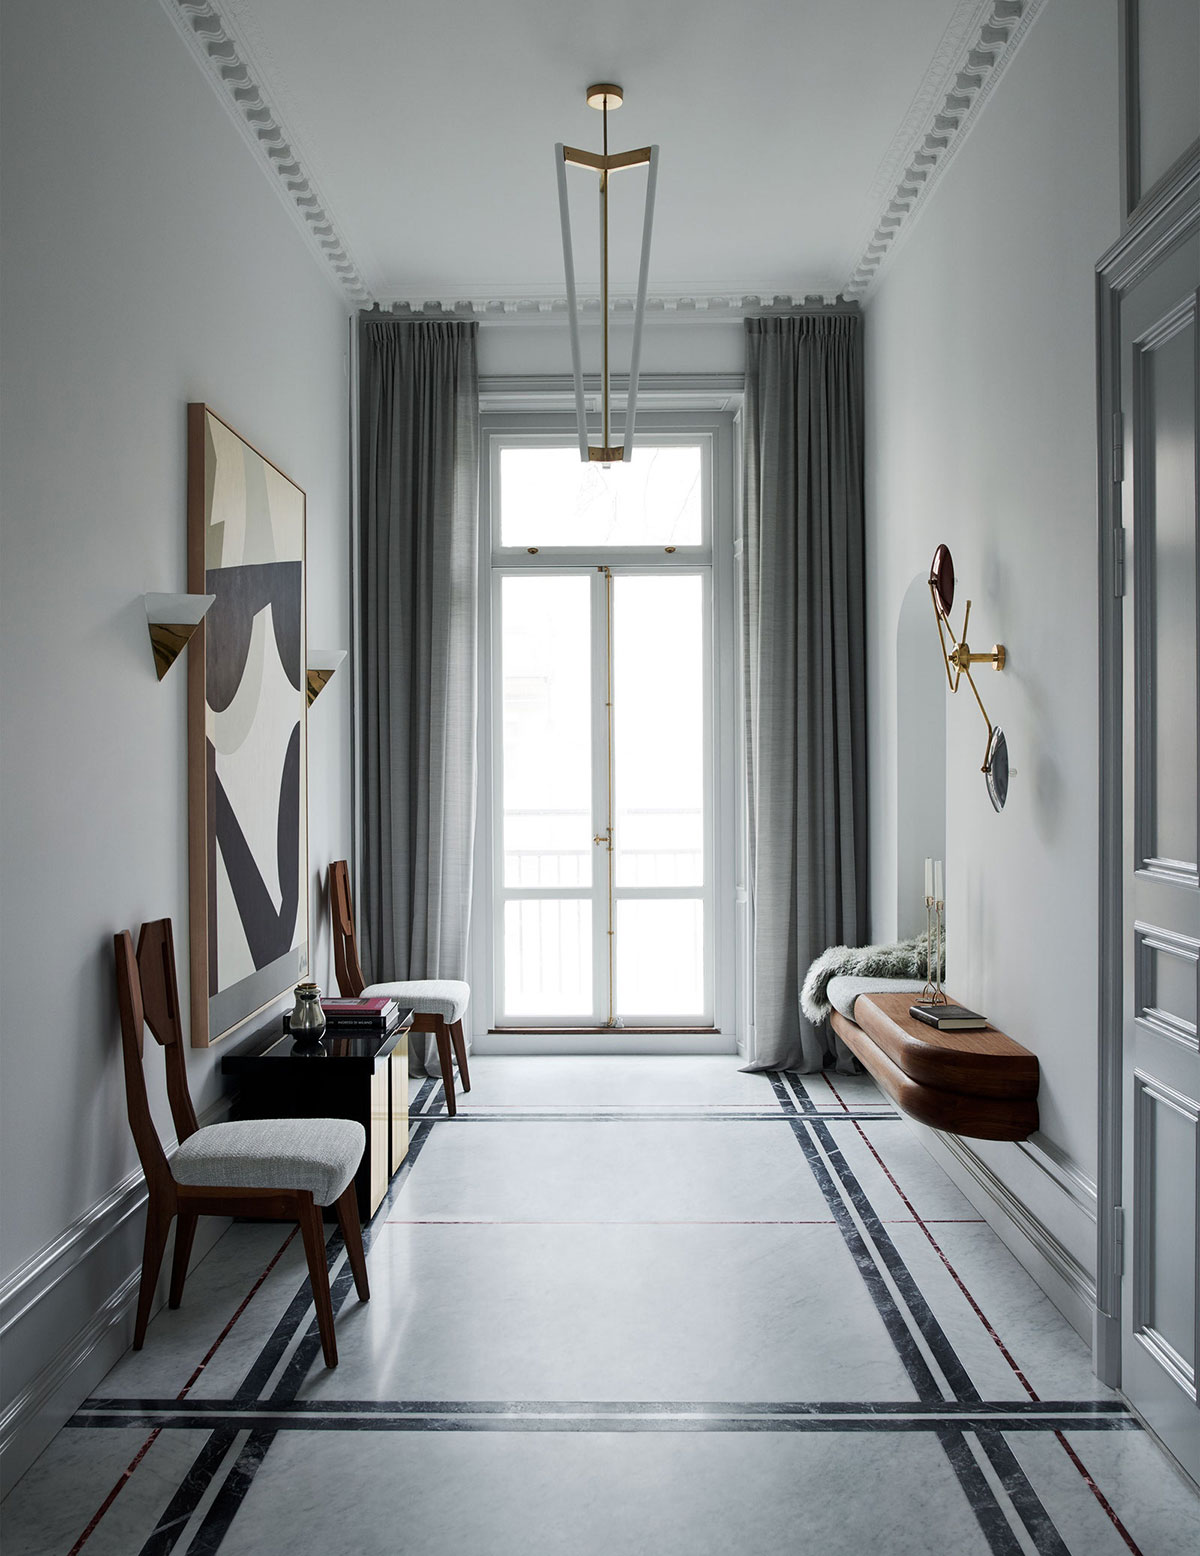 Прохладная элегантность: изысканный интерьер в старом доме в Стокгольме